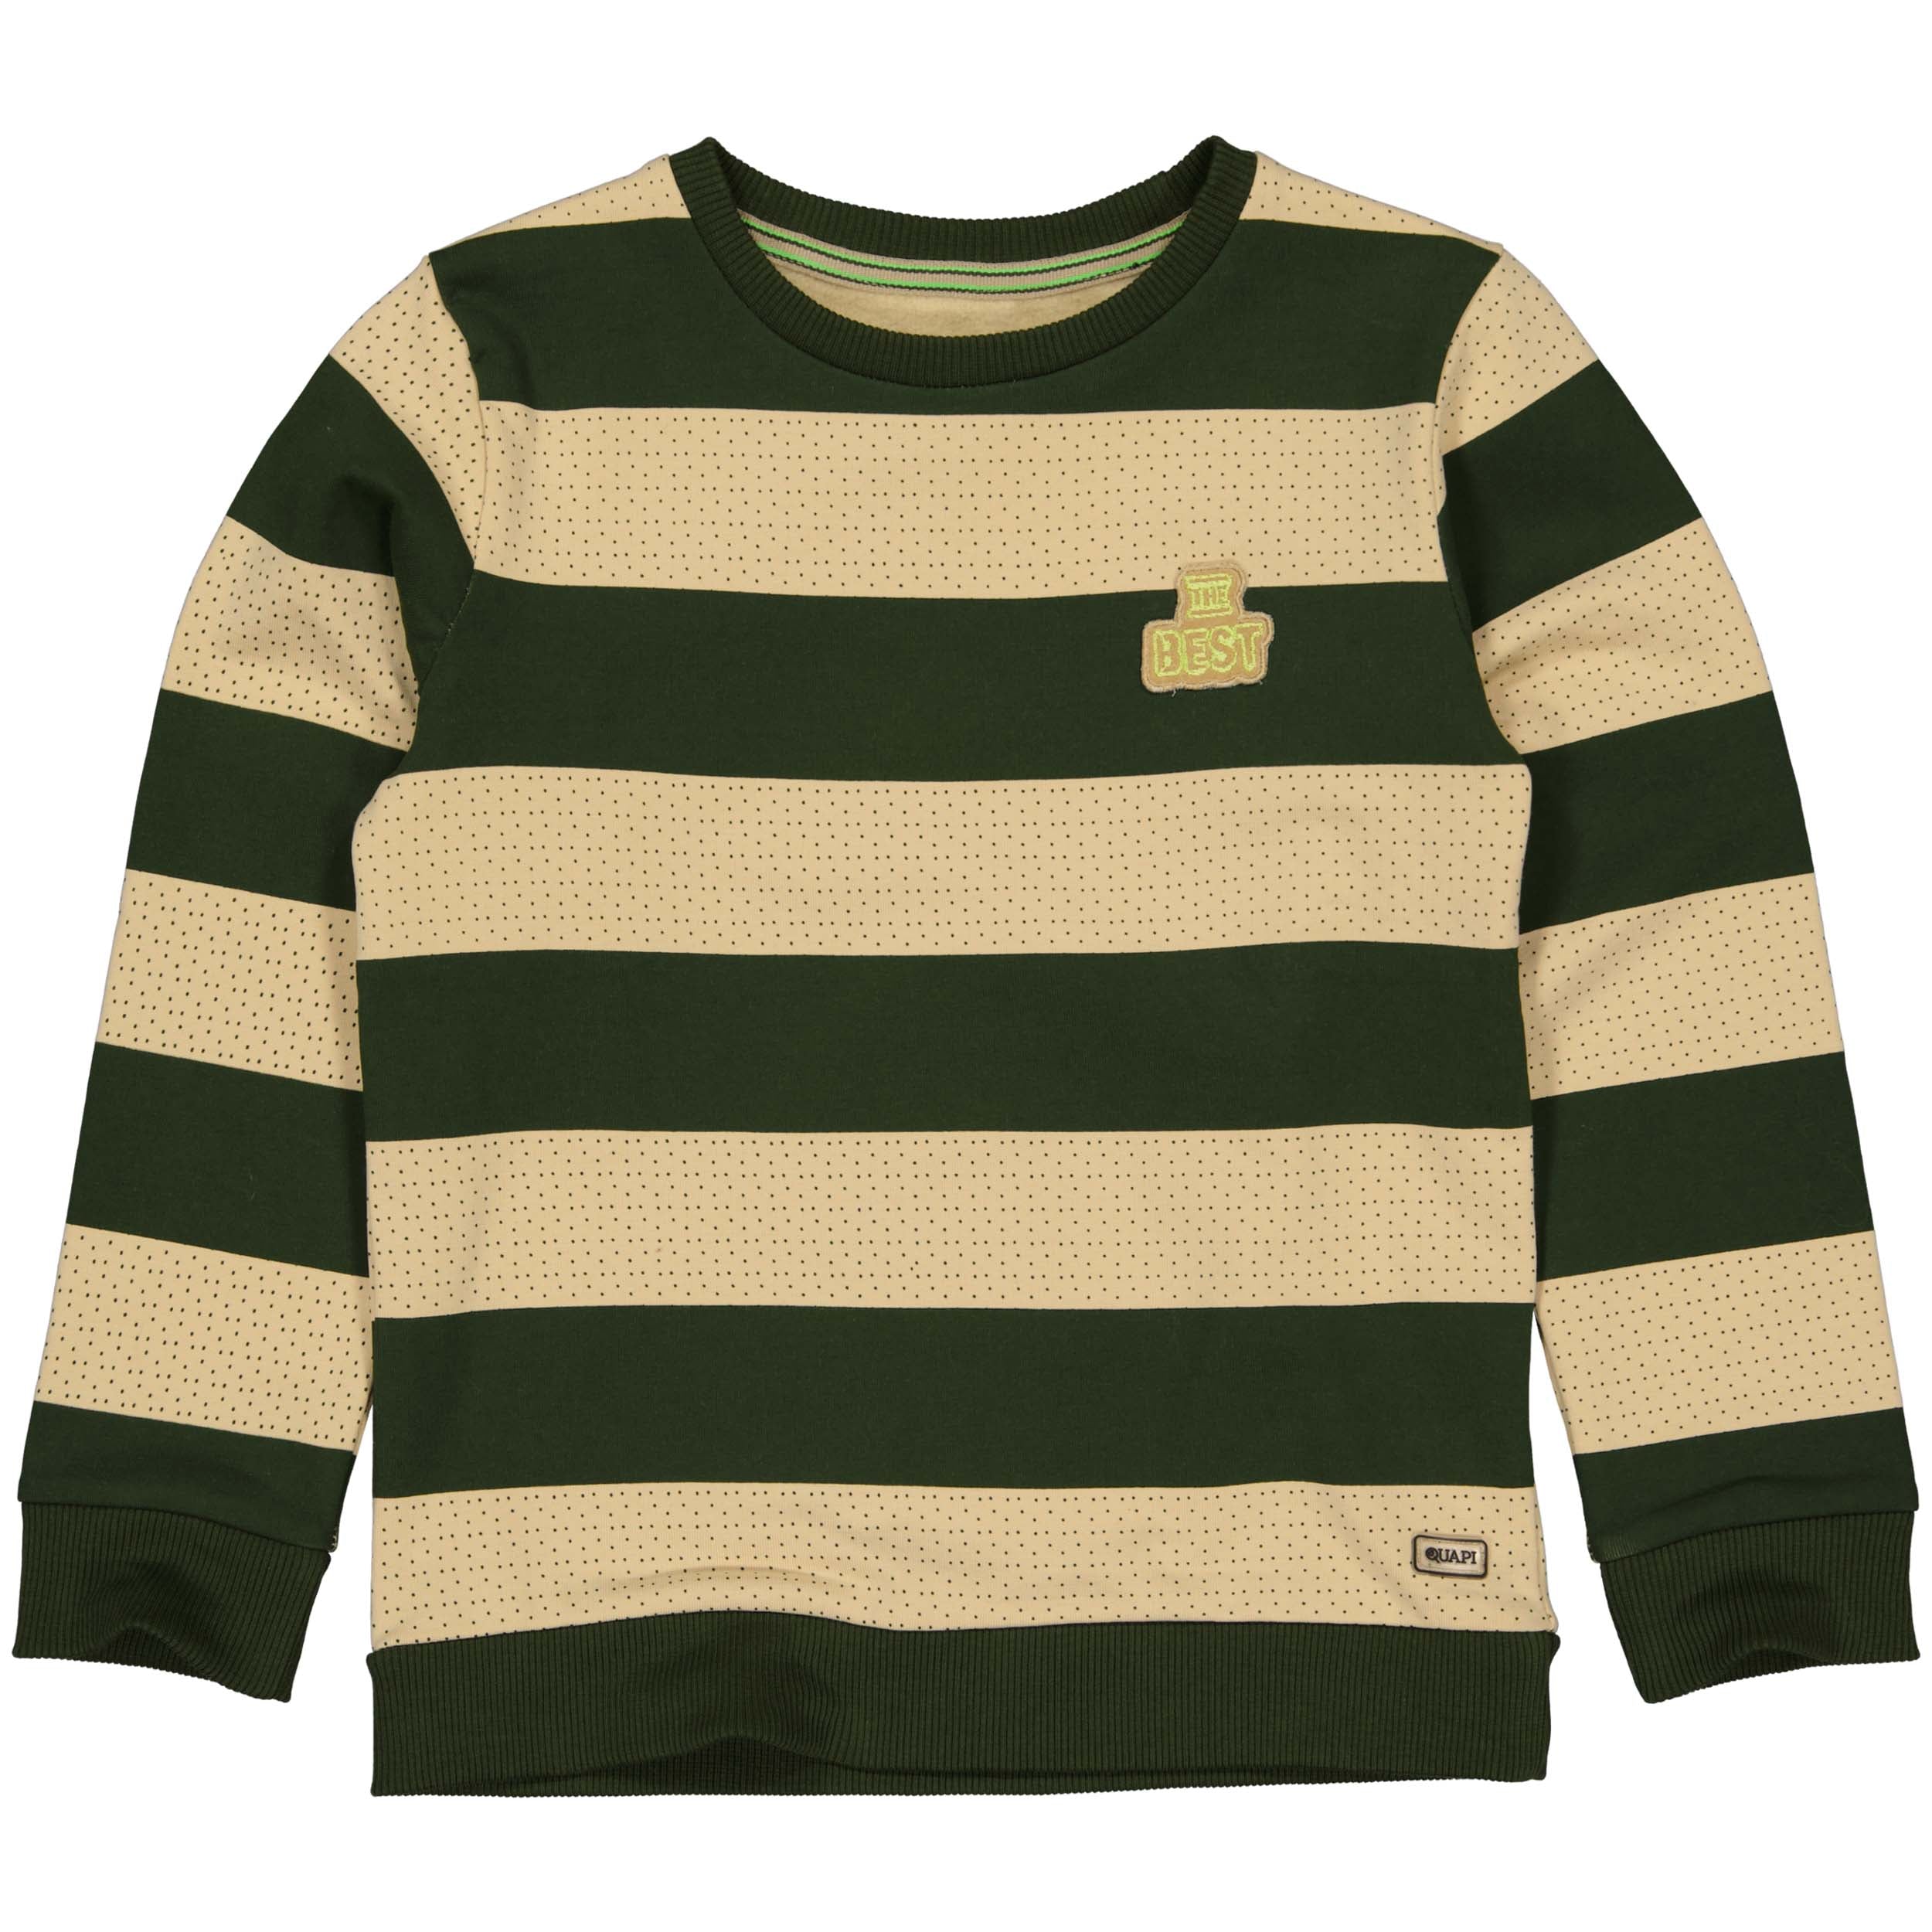 Jongens Sweater RAMOW221 van Quapi in de kleur Green Wood Stripe in maat 98-104.